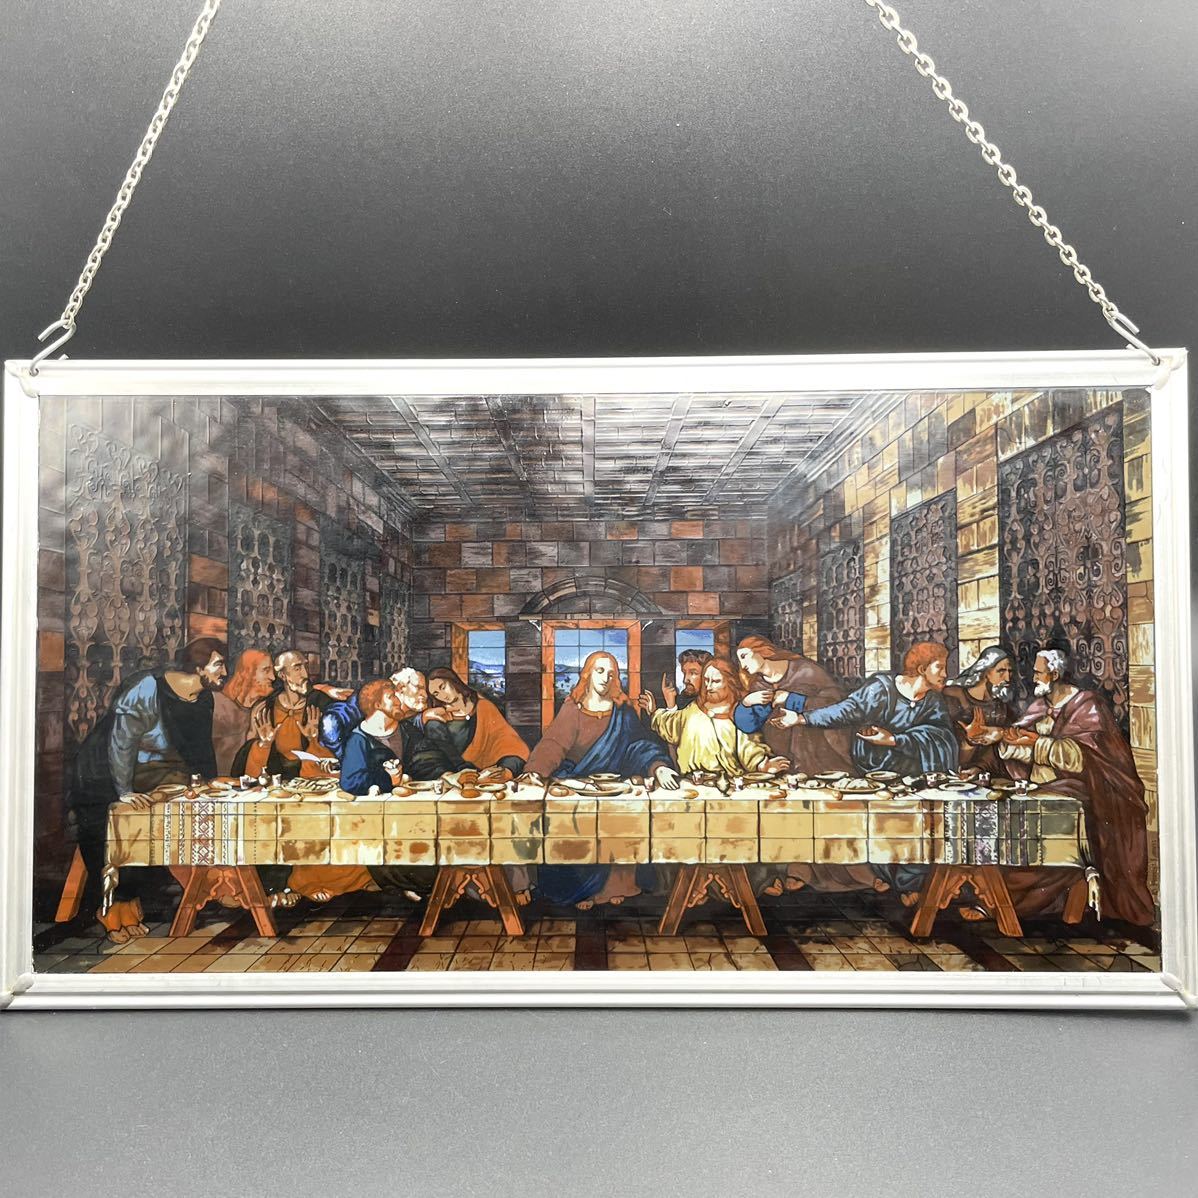 ◆絶版品◆ ステンドグラス The Last Supper 最後の晩餐 グラスマスターズ社 レオナルド・ダ・ヴィンチ glassmaster 廃盤